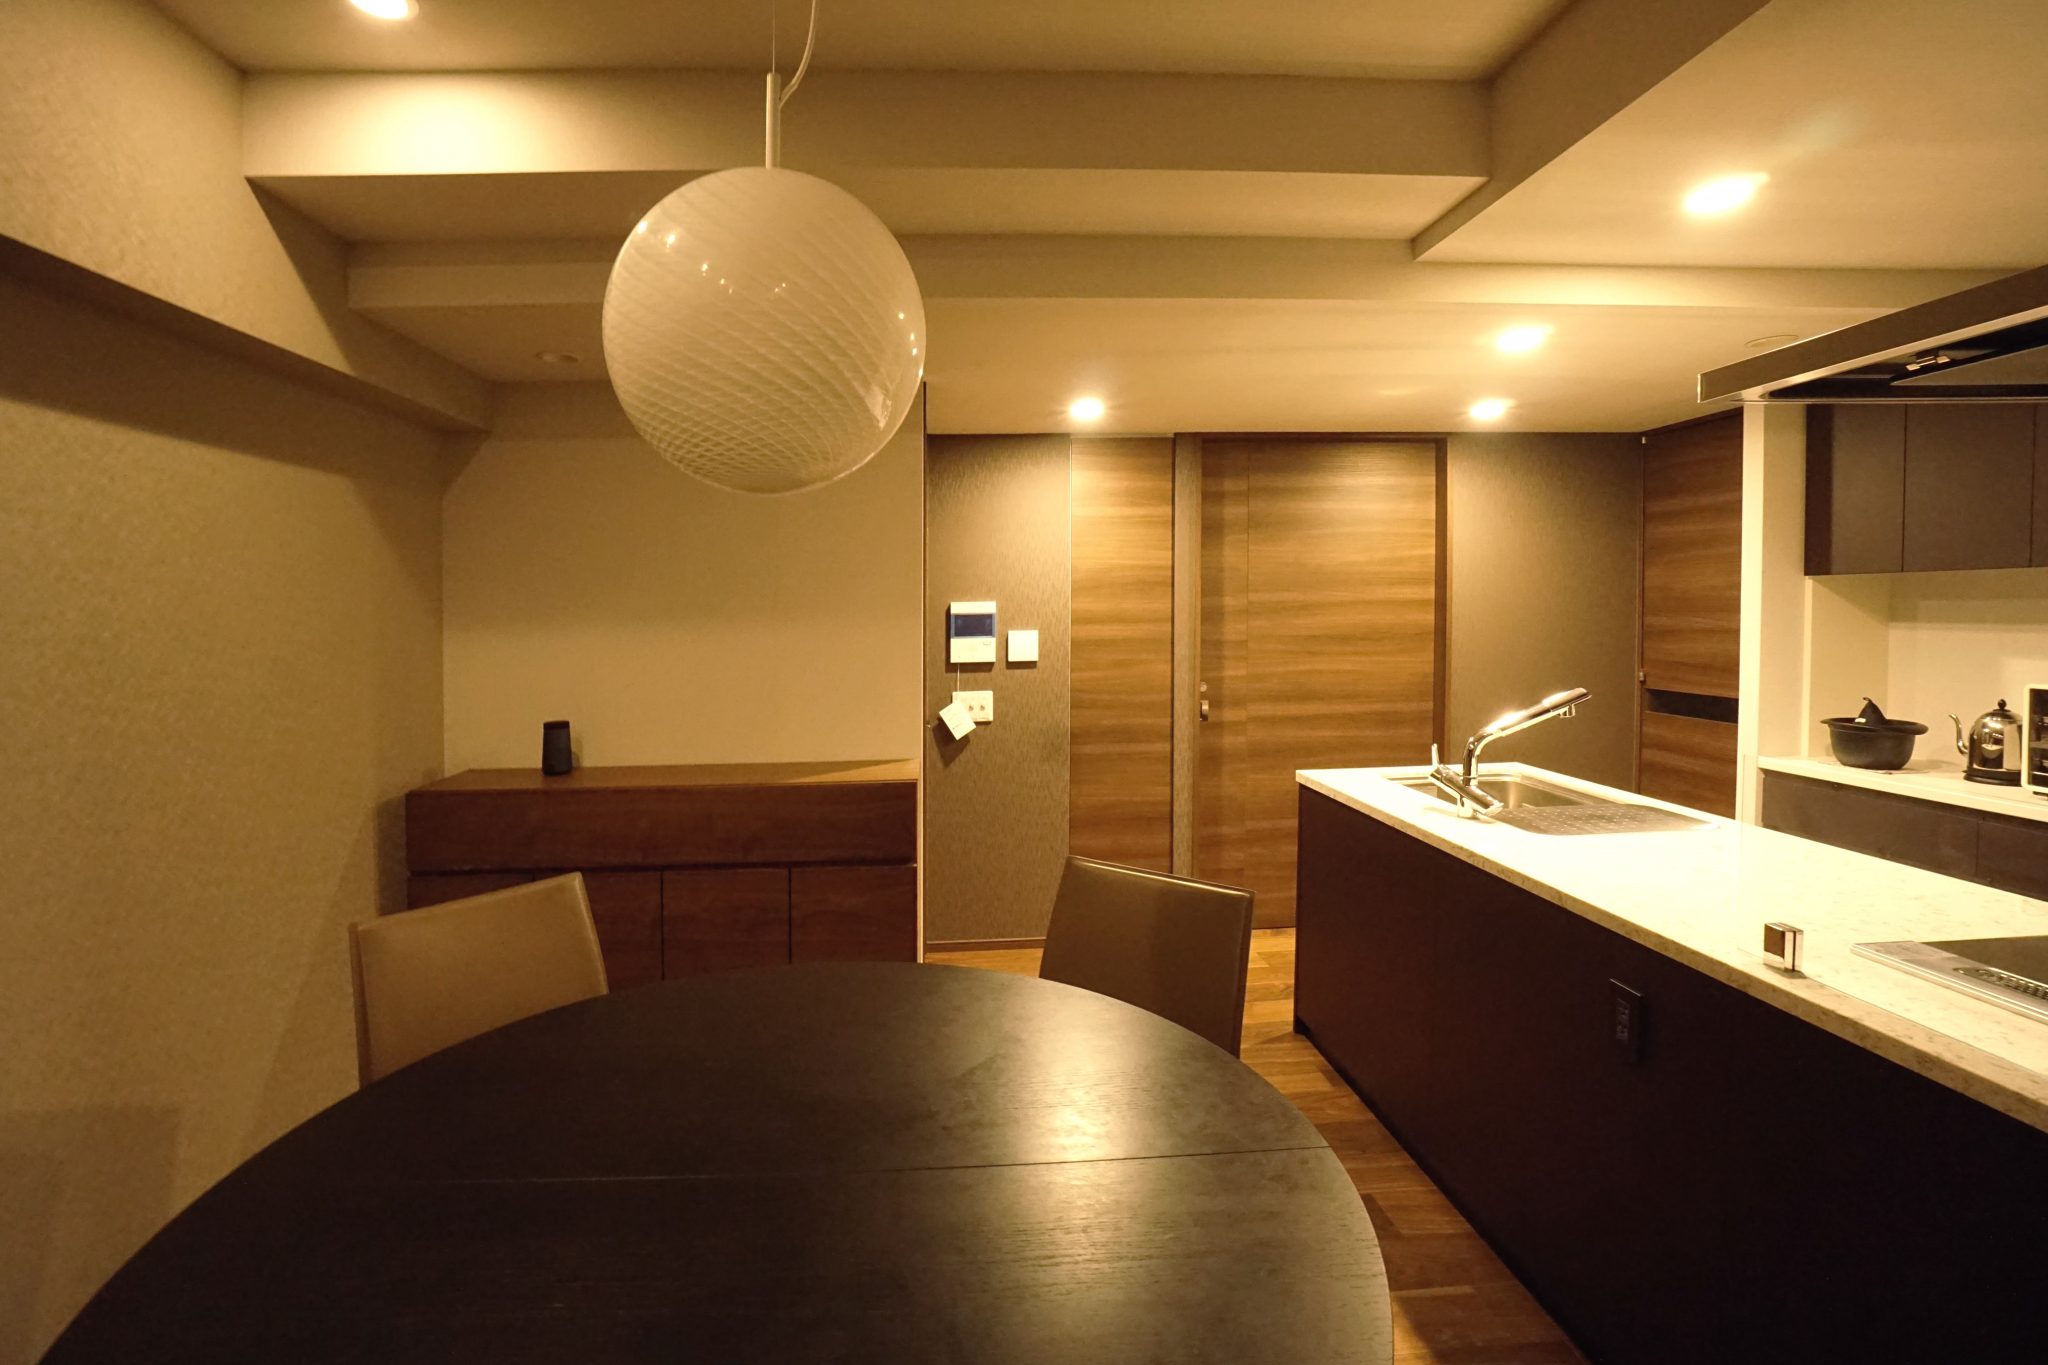 湯島の住戸 -内装・インテリアコーディネート-｜Residence in Yushima by the renovation & interior cordinate-06